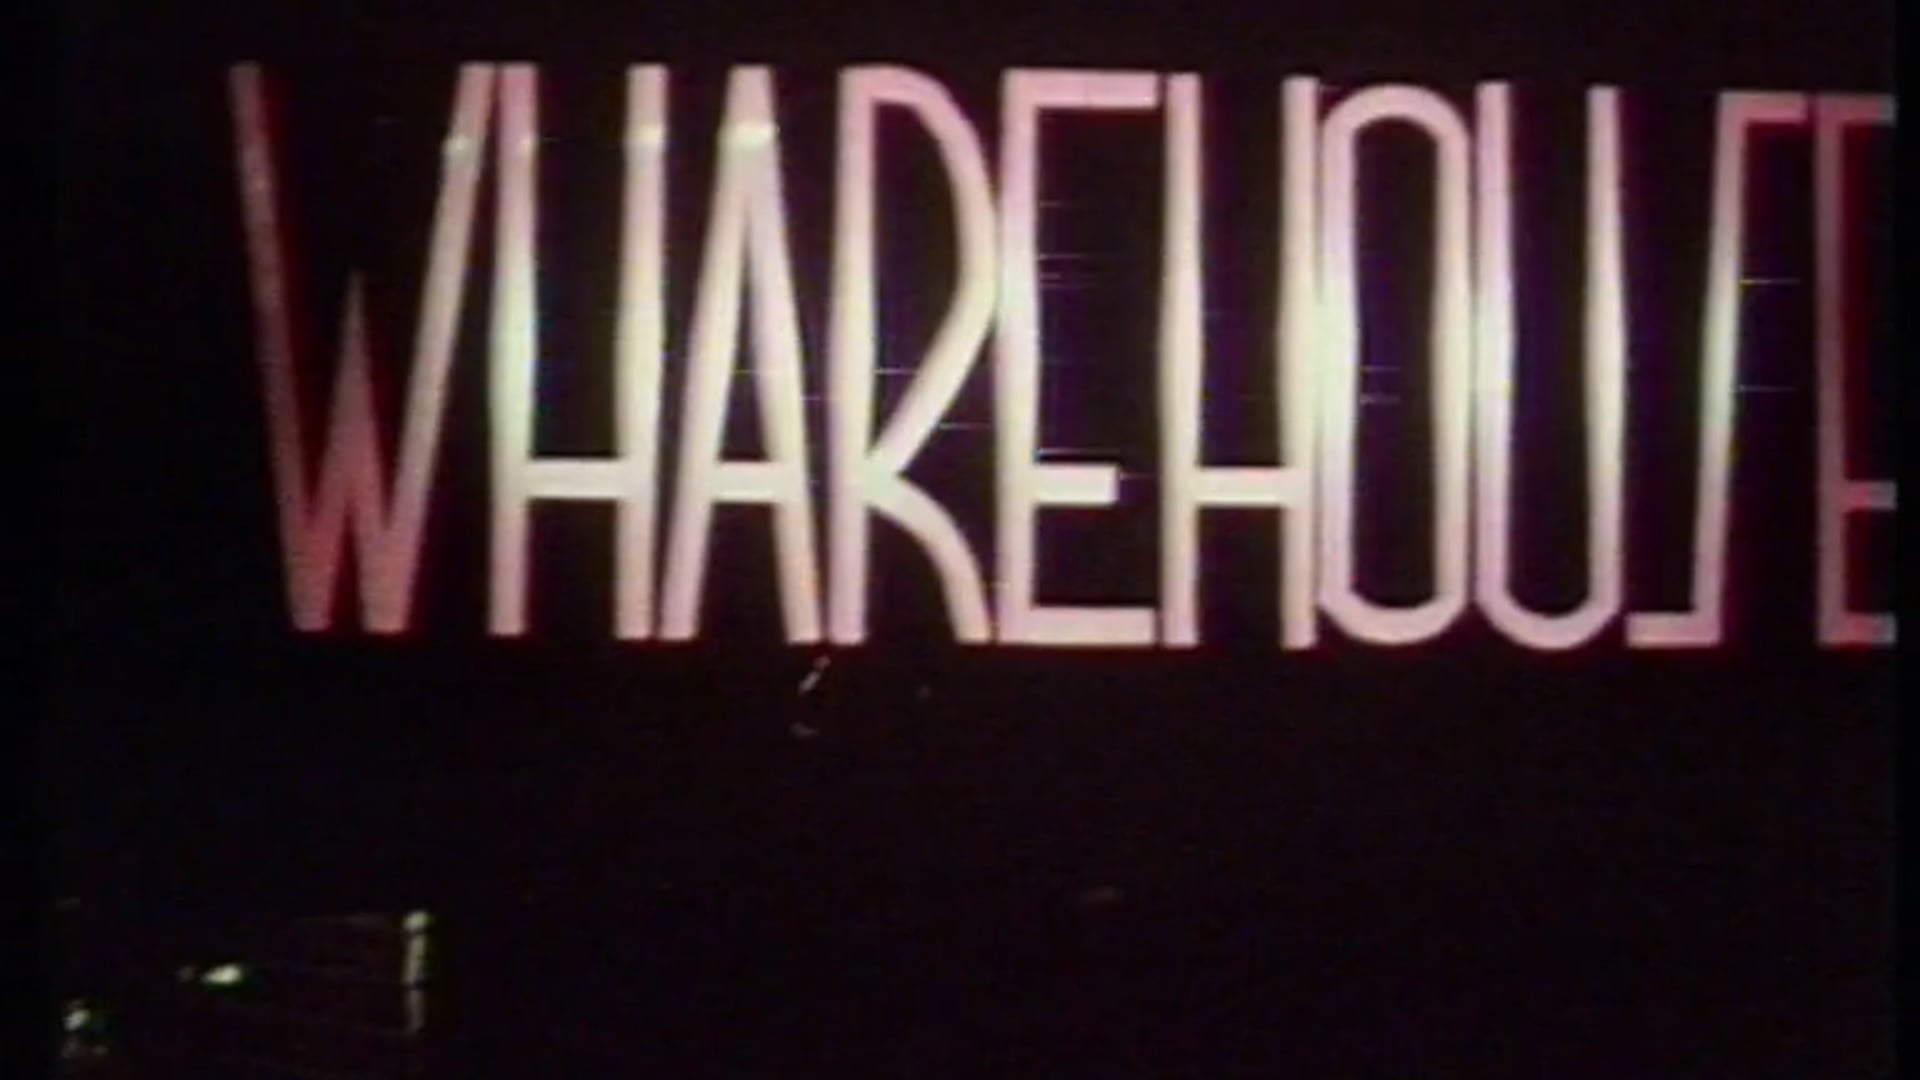 80's - The Wharehouse Club